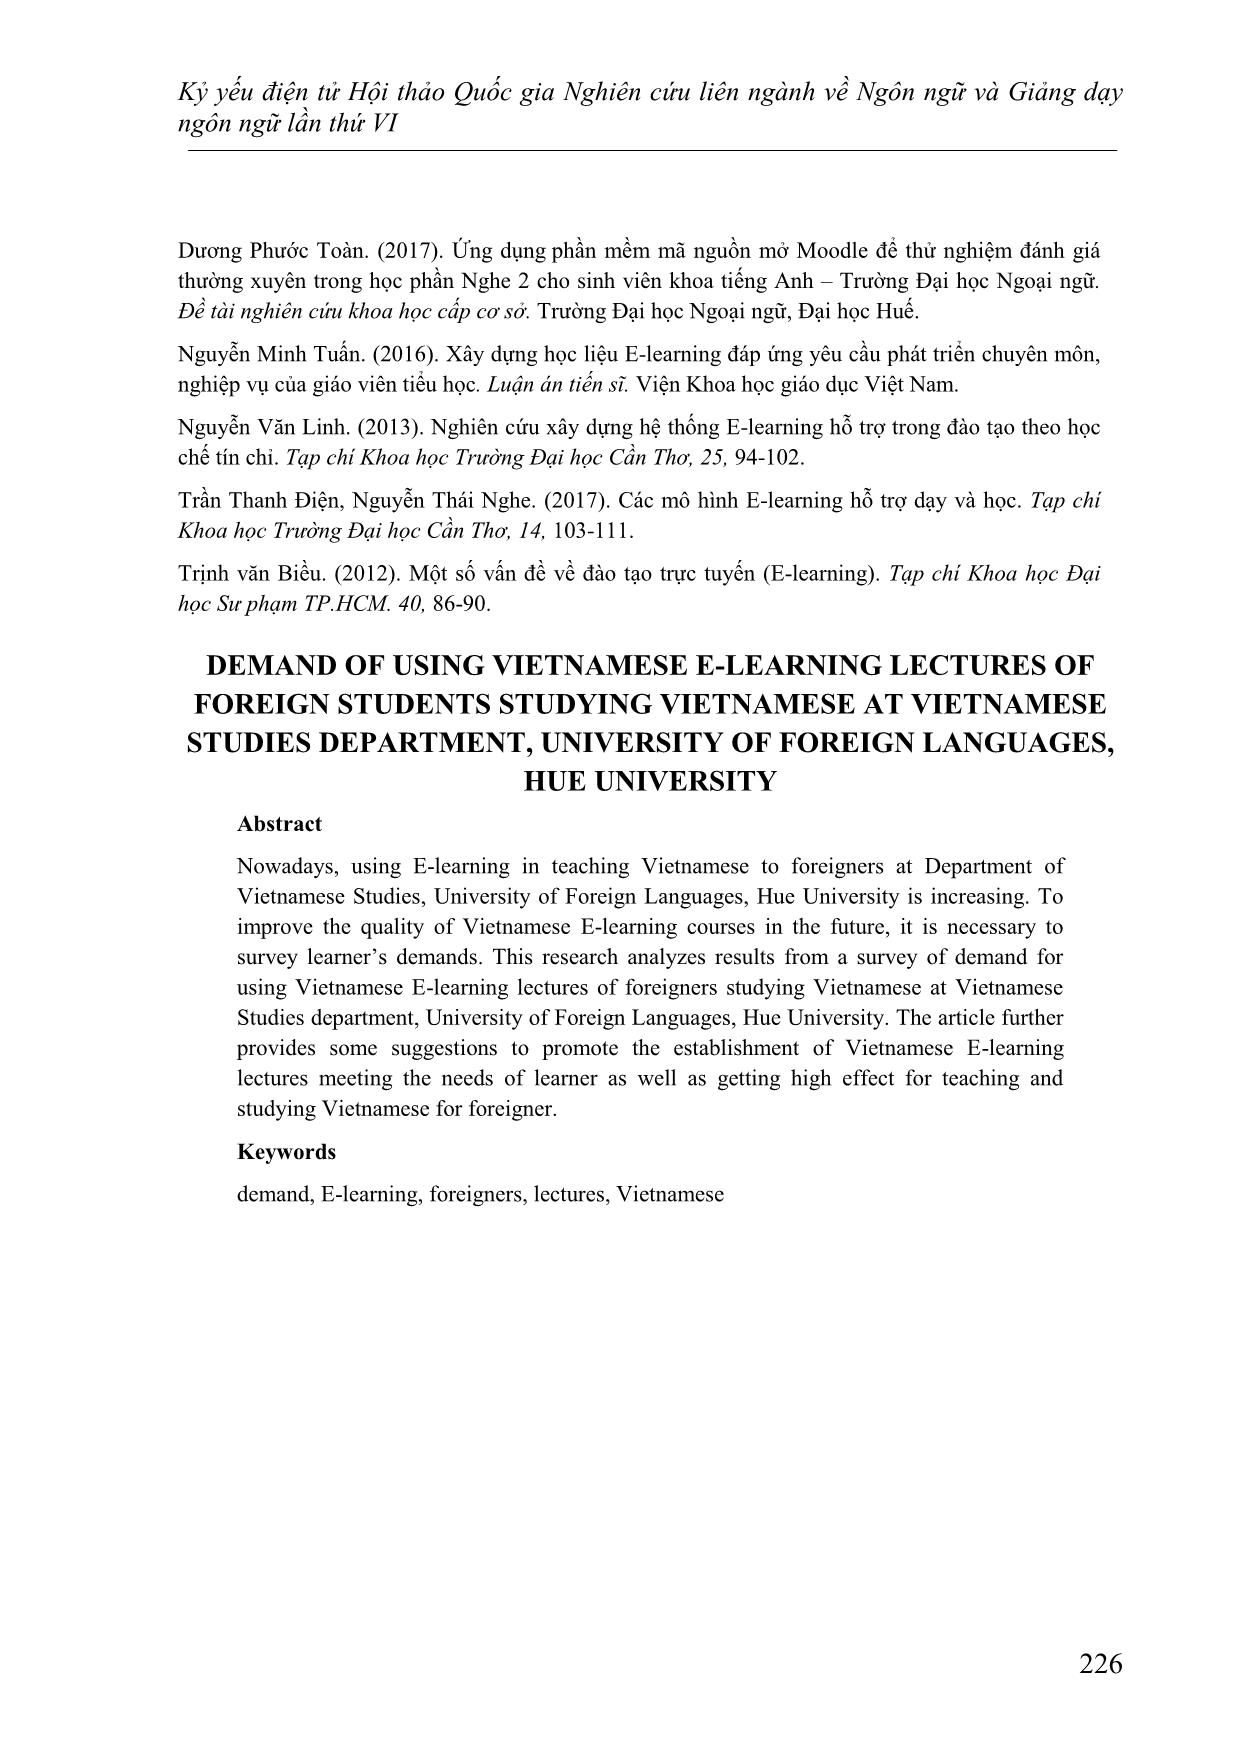 Nhu cầu sử dụng bài giảng Tiếng Việt E - Learning của sinh viên nước ngoài học tiếng Việt tại khoa Việt Nam học, trường đại học ngoại ngữ, Đại học Huế trang 10